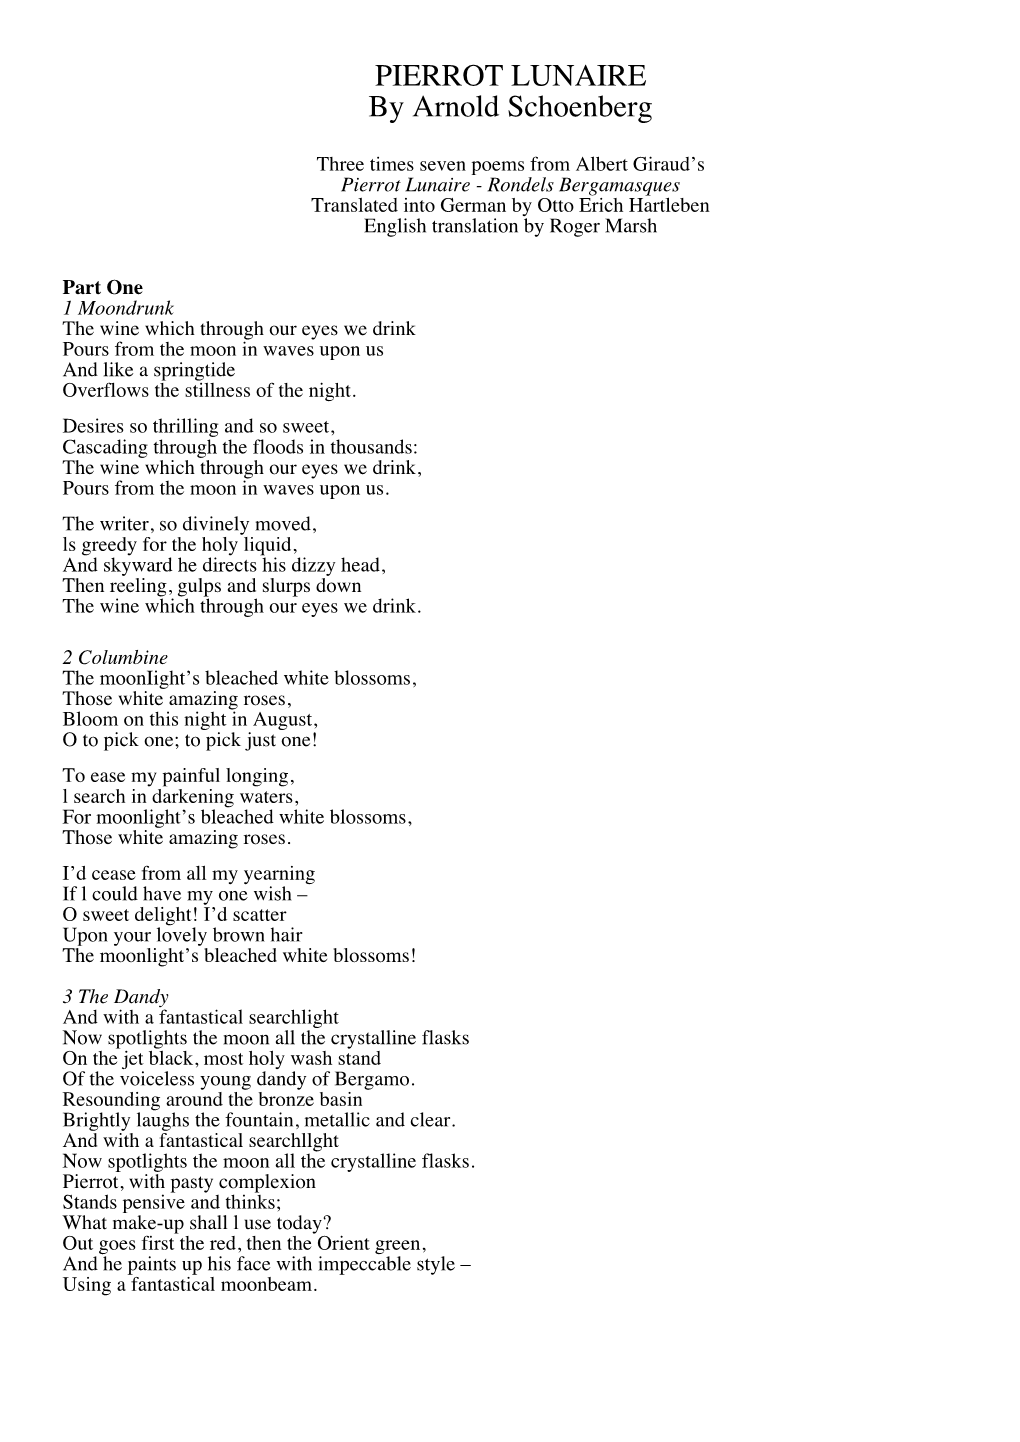 PIERROT LUNAIRE by Arnold Schoenberg